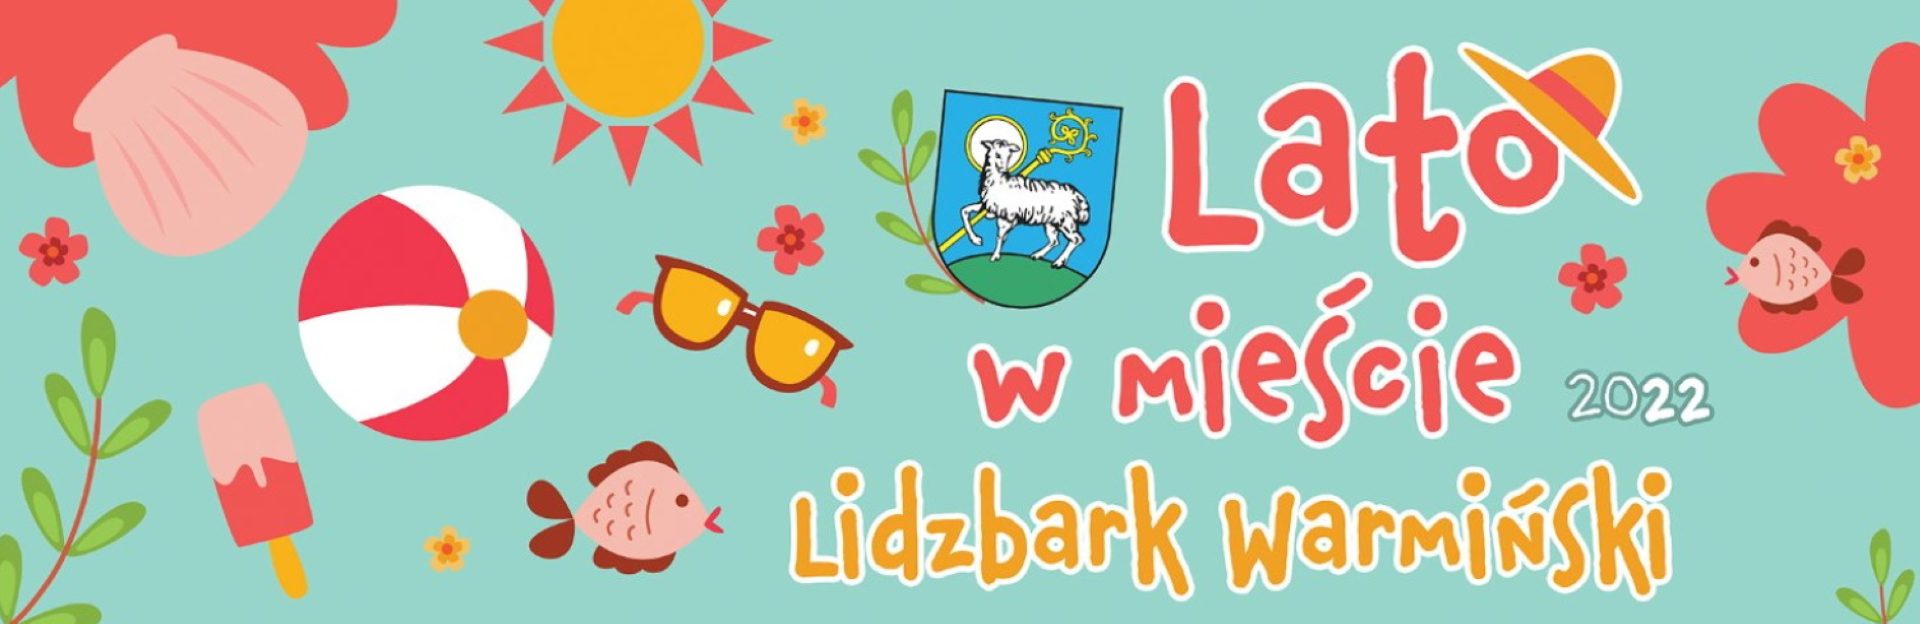 Plakat graficzny zapraszający do Lidzbarka Warmińskiego na coroczną imprezę Dni Lidzbarka Warmińskiego 2022. 